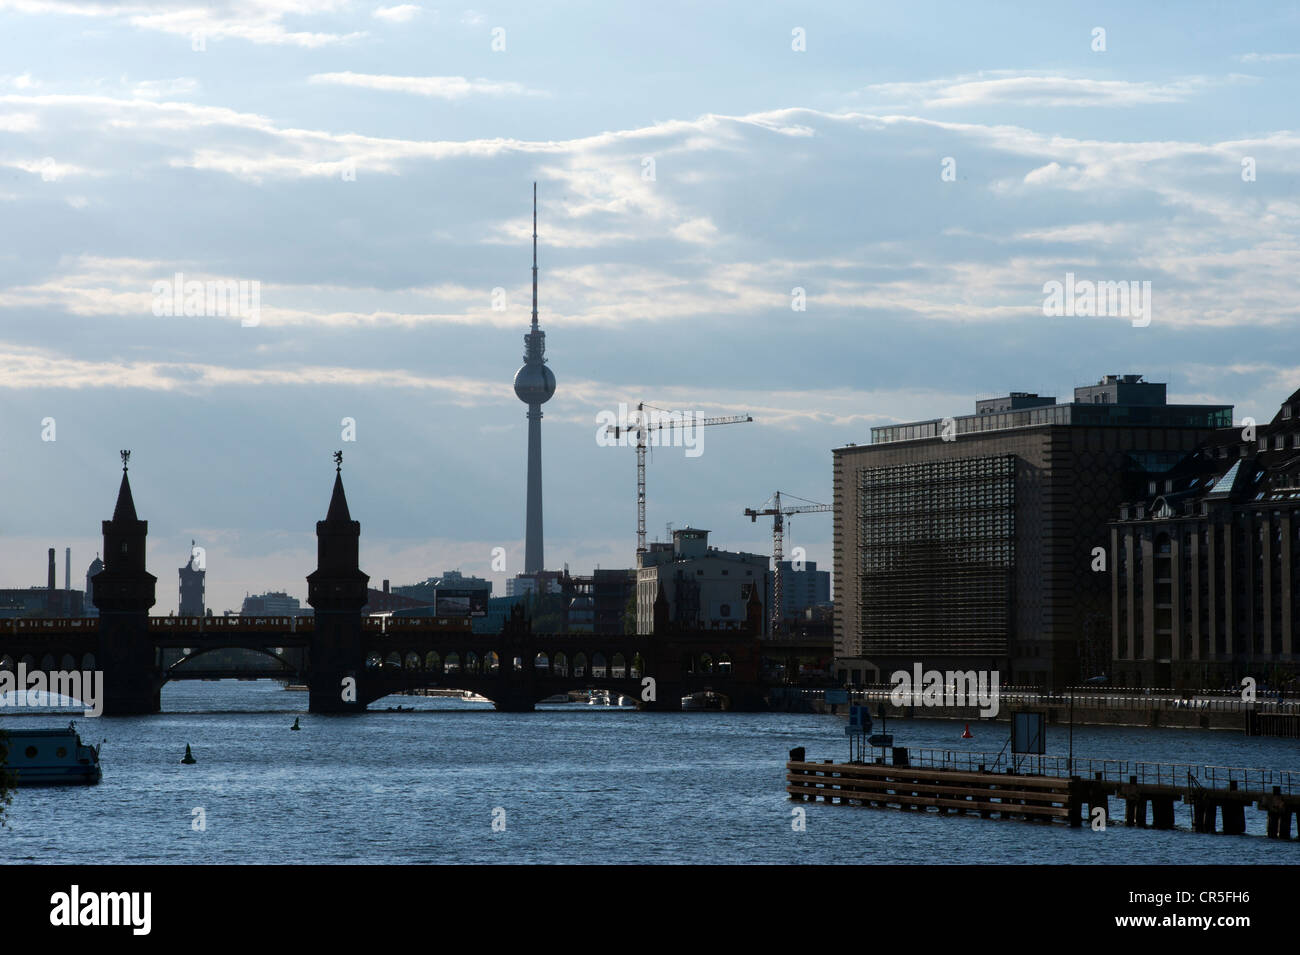 Vue sur la rivière Spree avec le pont et l'Oberbaumbruecke televisiontower en arrière-plan lors d'un coucher de soleil d'été, Berlin Banque D'Images